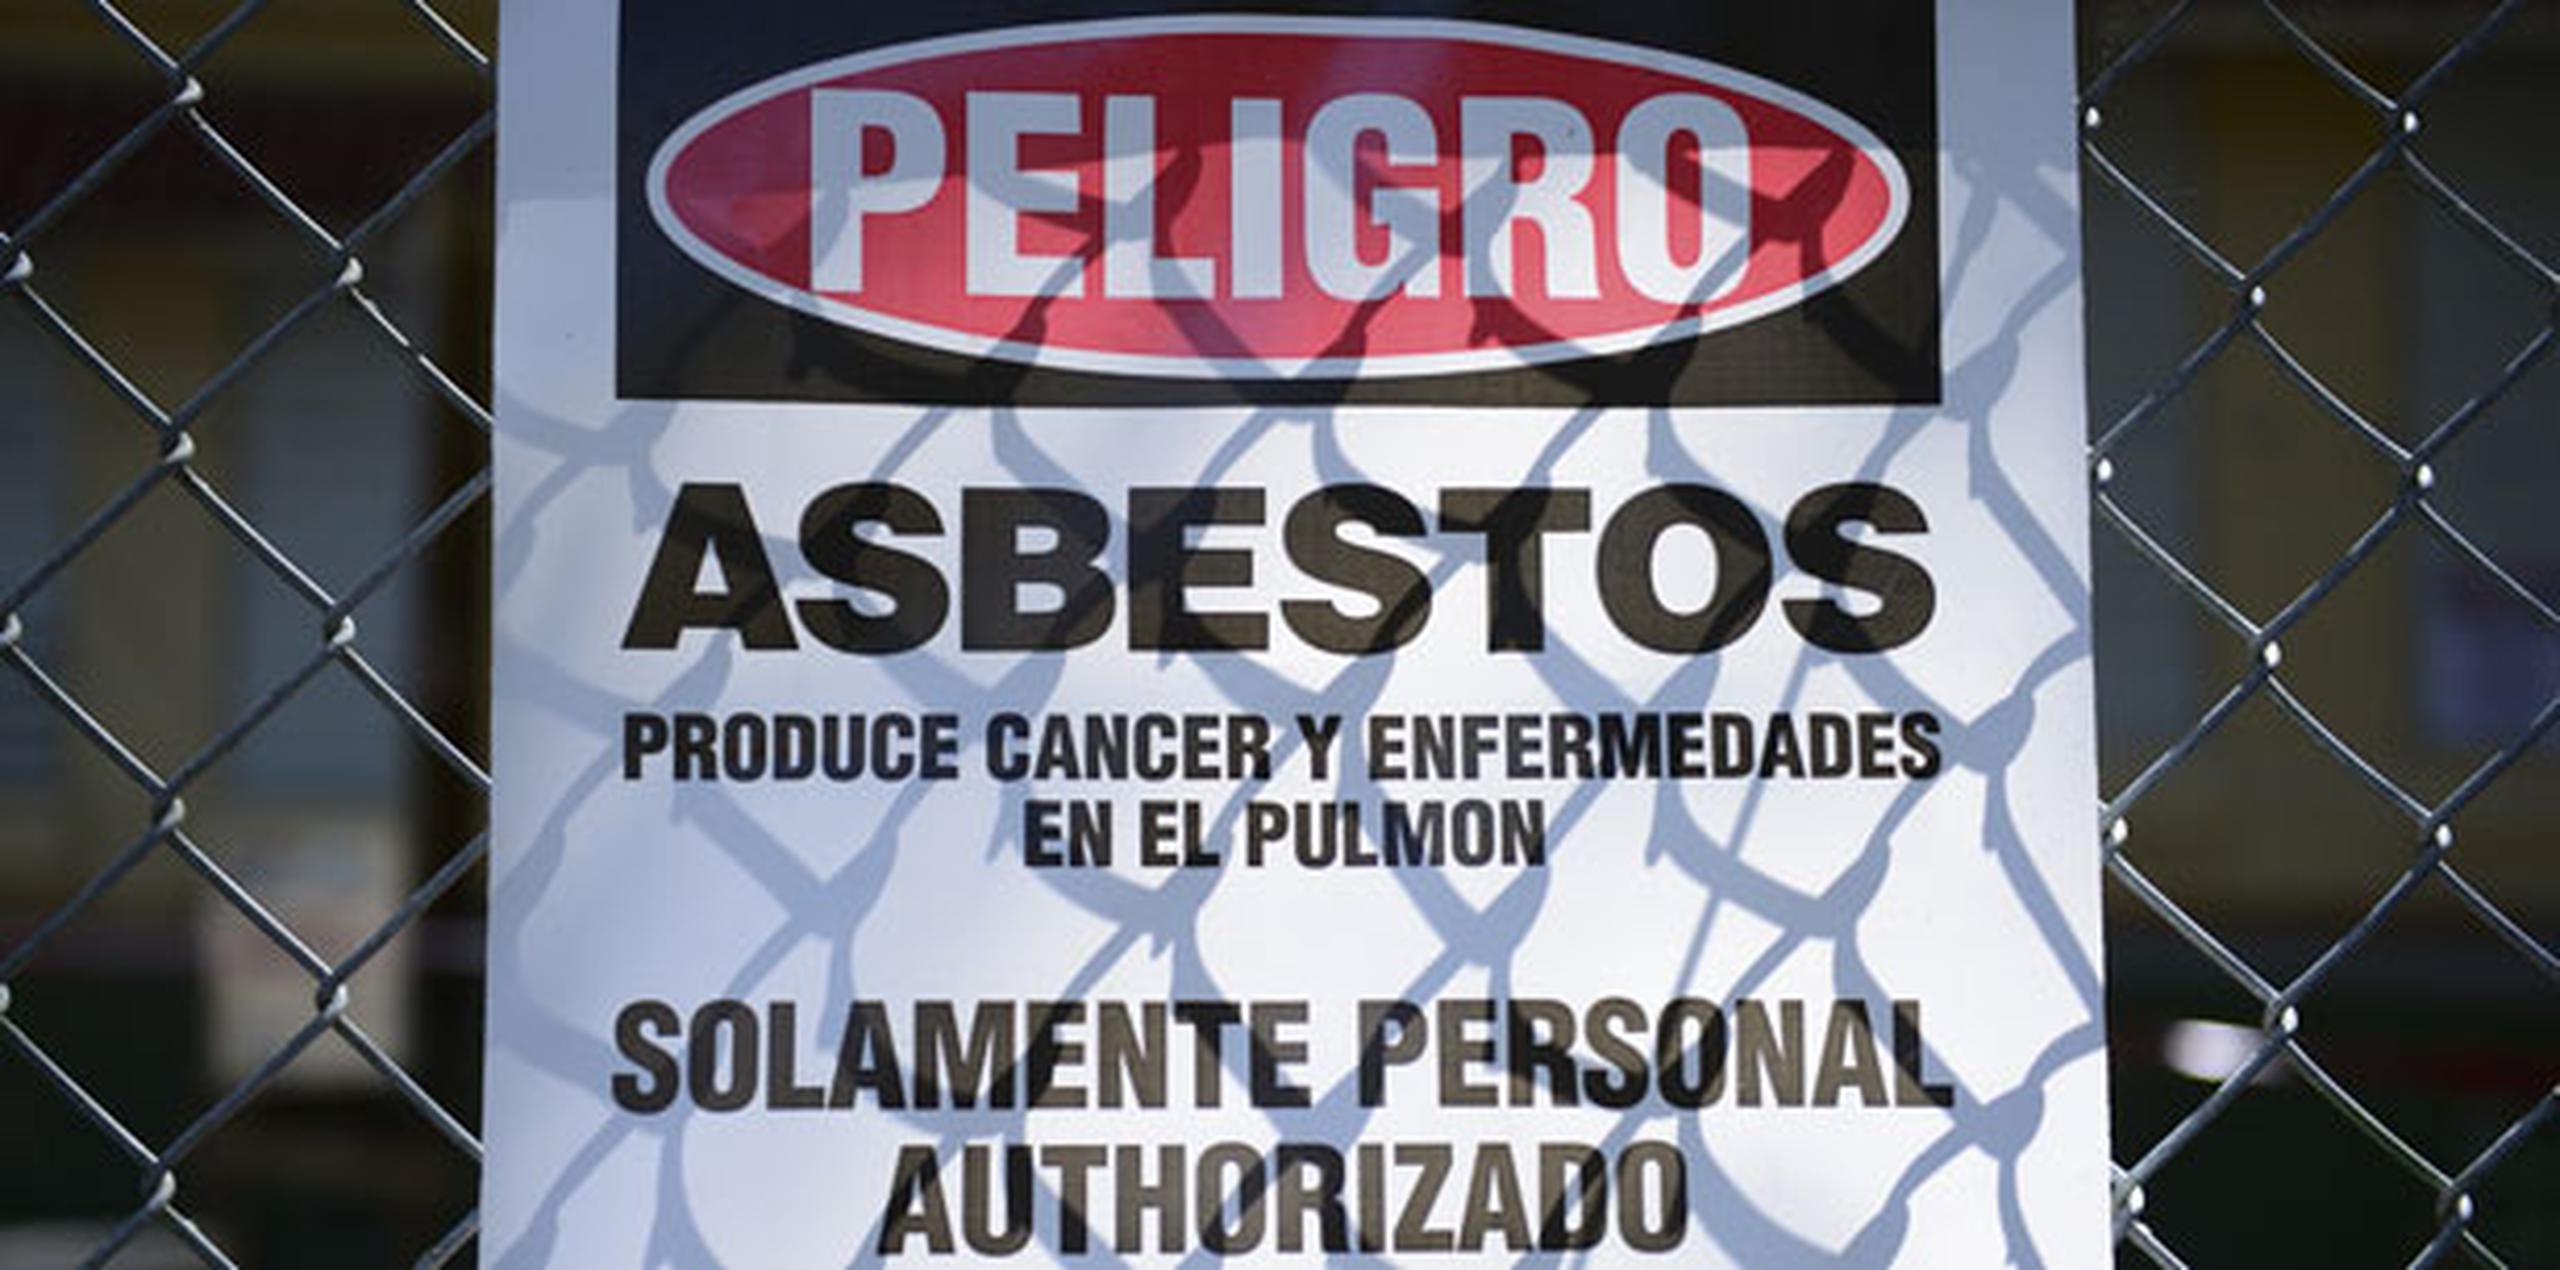 Otro cargo fue presentado contra el dueño y vicepresidente de operaciones de Aireko, Edgardo Albino, por no notificar inmediatamente a las agencias gubernamentales apropiadas sobre la cantidad de asbesto removido. (Archivo)